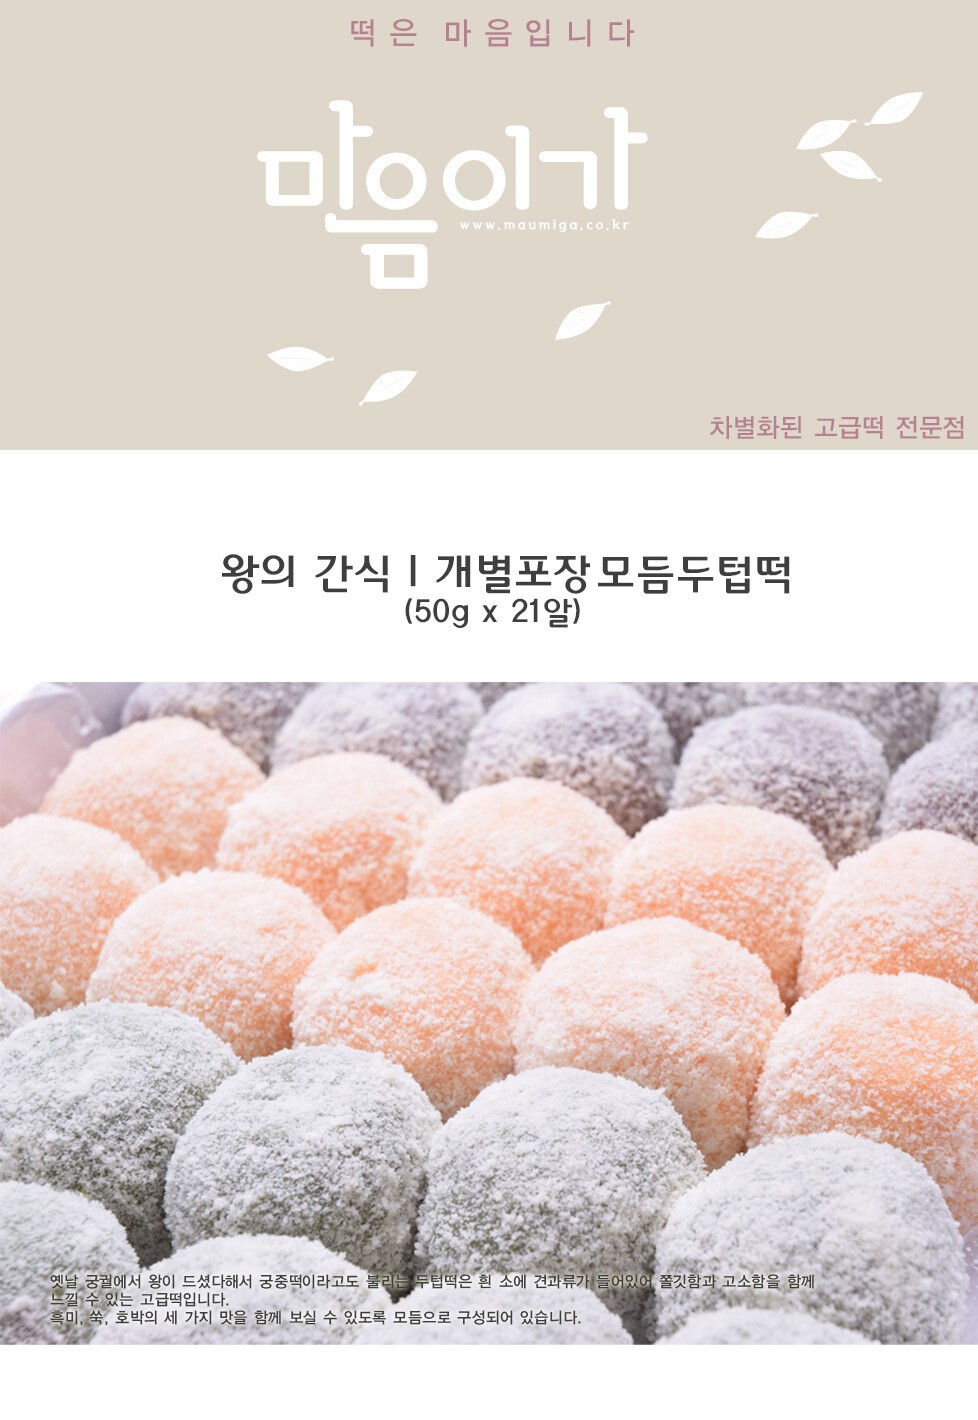 韓國食品-[마음이가] 모둠두텁떡 60g*21